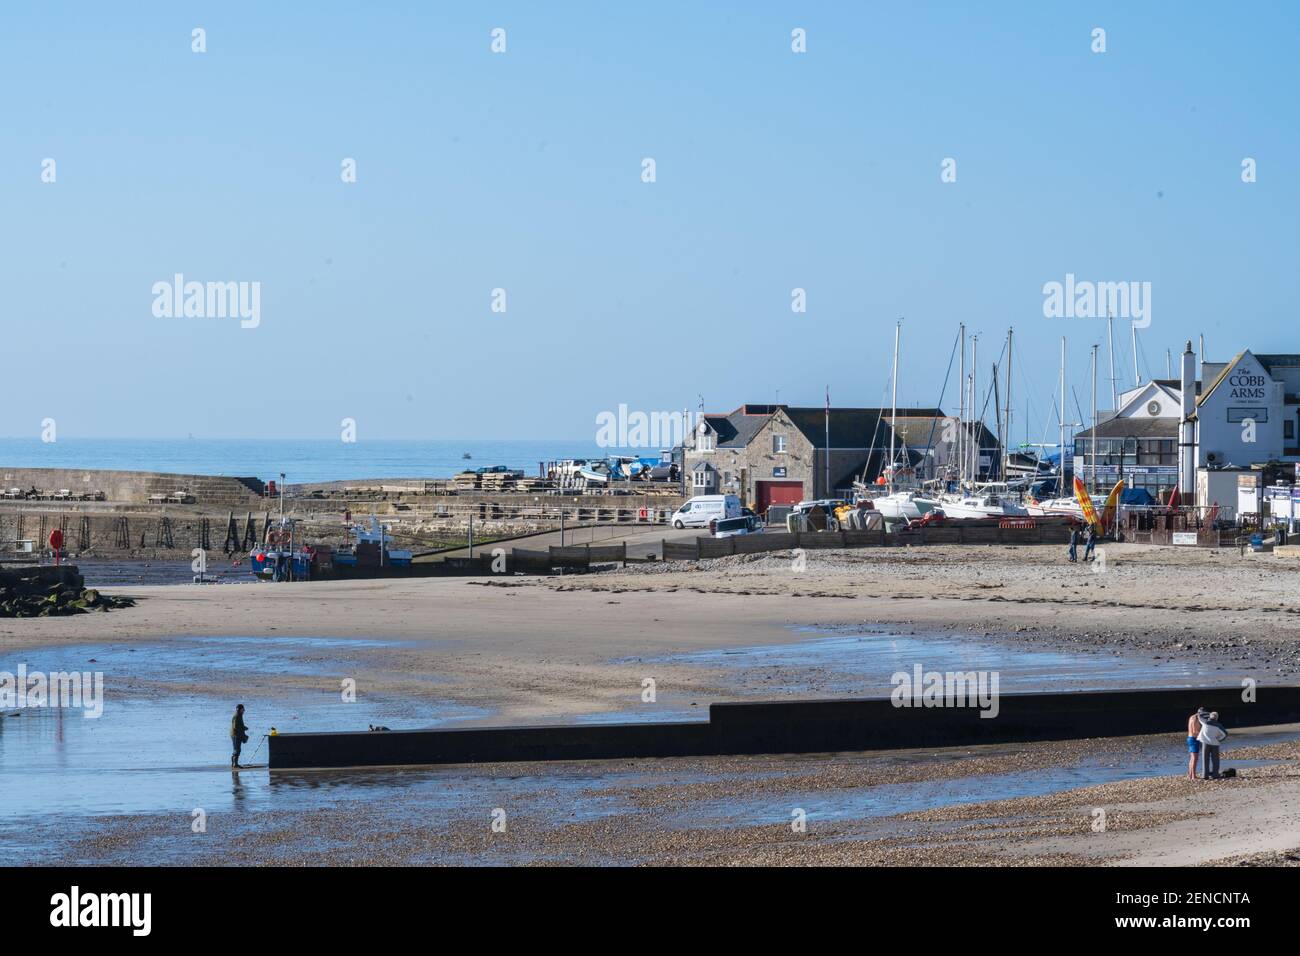 Lyme Regis, Dorset, Royaume-Uni. 26 février 2021. UK Weather: Un jour glorieux de soleil chaud et de ciel bleu clair non cassé à la station balnéaire de Lyme Regis. Credit: Celia McMahon/Alamy Live News Banque D'Images